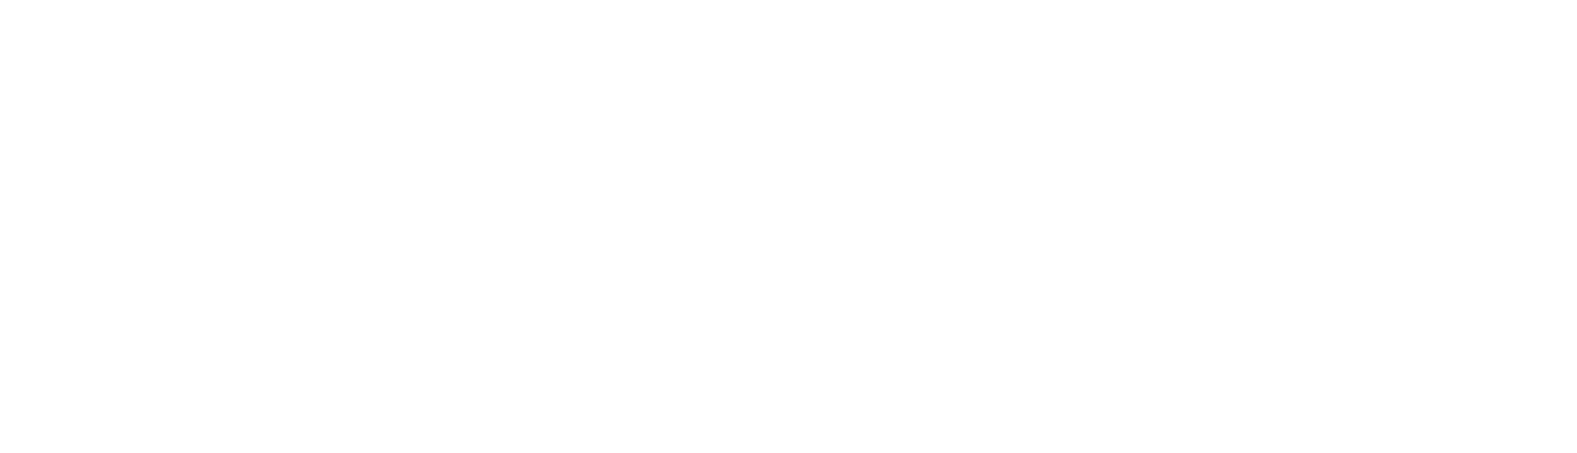 Allego logo large for dark backgrounds (transparent PNG)